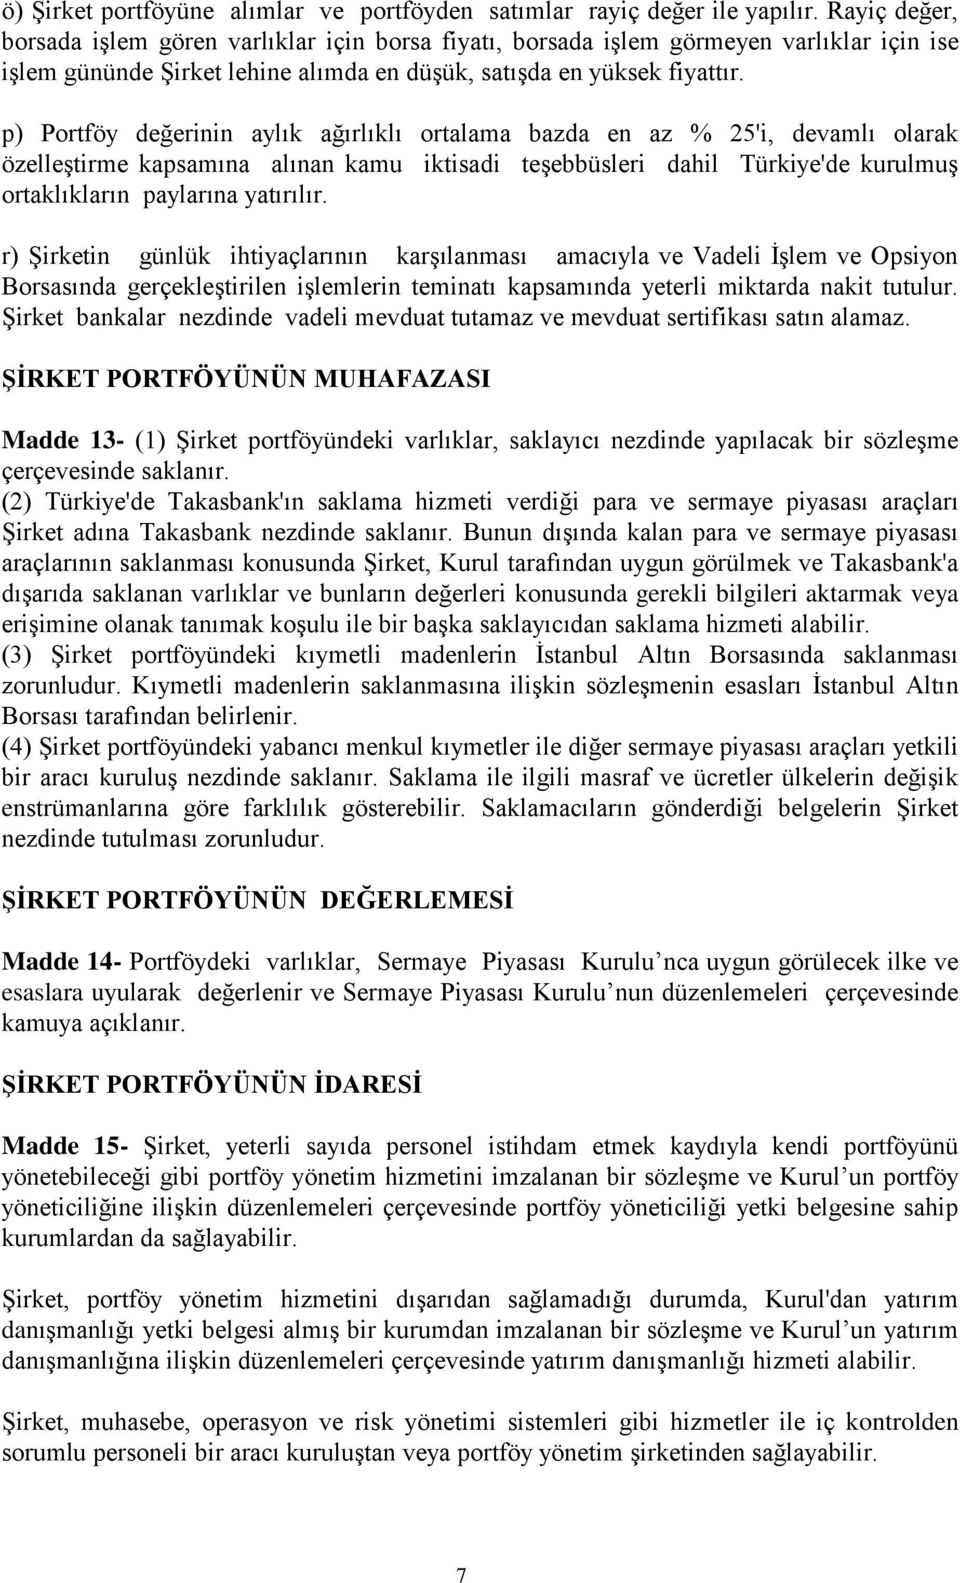 p) Portföy değerinin aylık ağırlıklı ortalama bazda en az % 25'i, devamlı olarak özelleştirme kapsamına alınan kamu iktisadi teşebbüsleri dahil Türkiye'de kurulmuş ortaklıkların paylarına yatırılır.